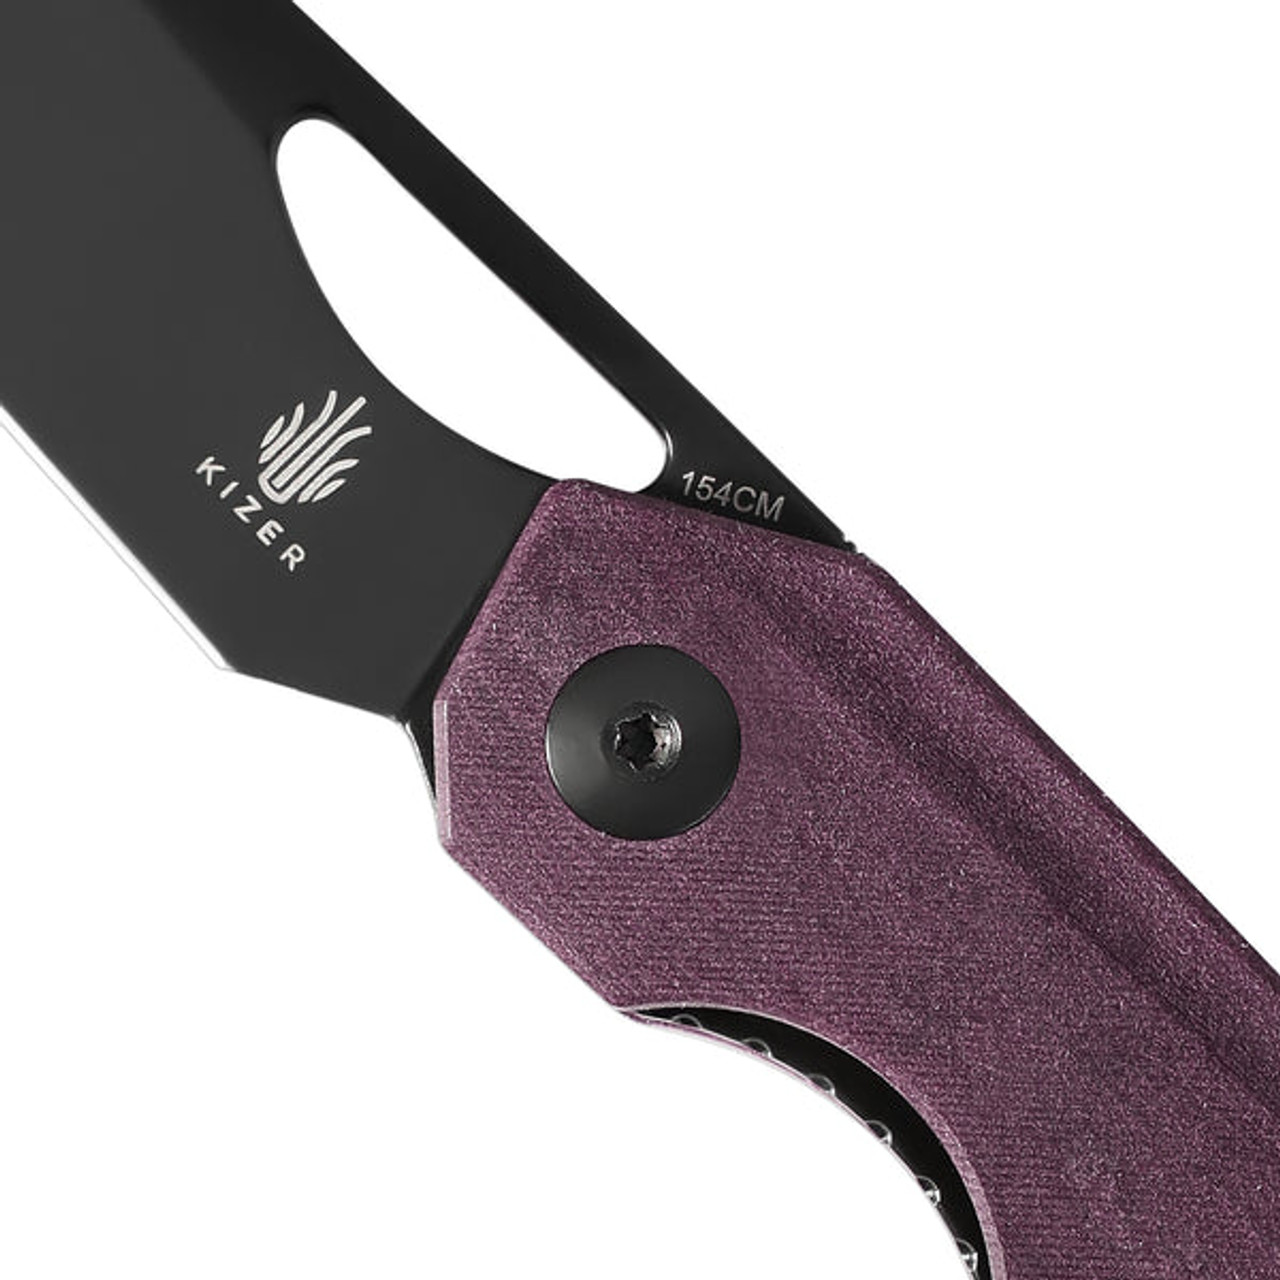 Kizer Genie Folding Knife (V4545C2) 3.40 in Black 154CM, Red RichLite Handle